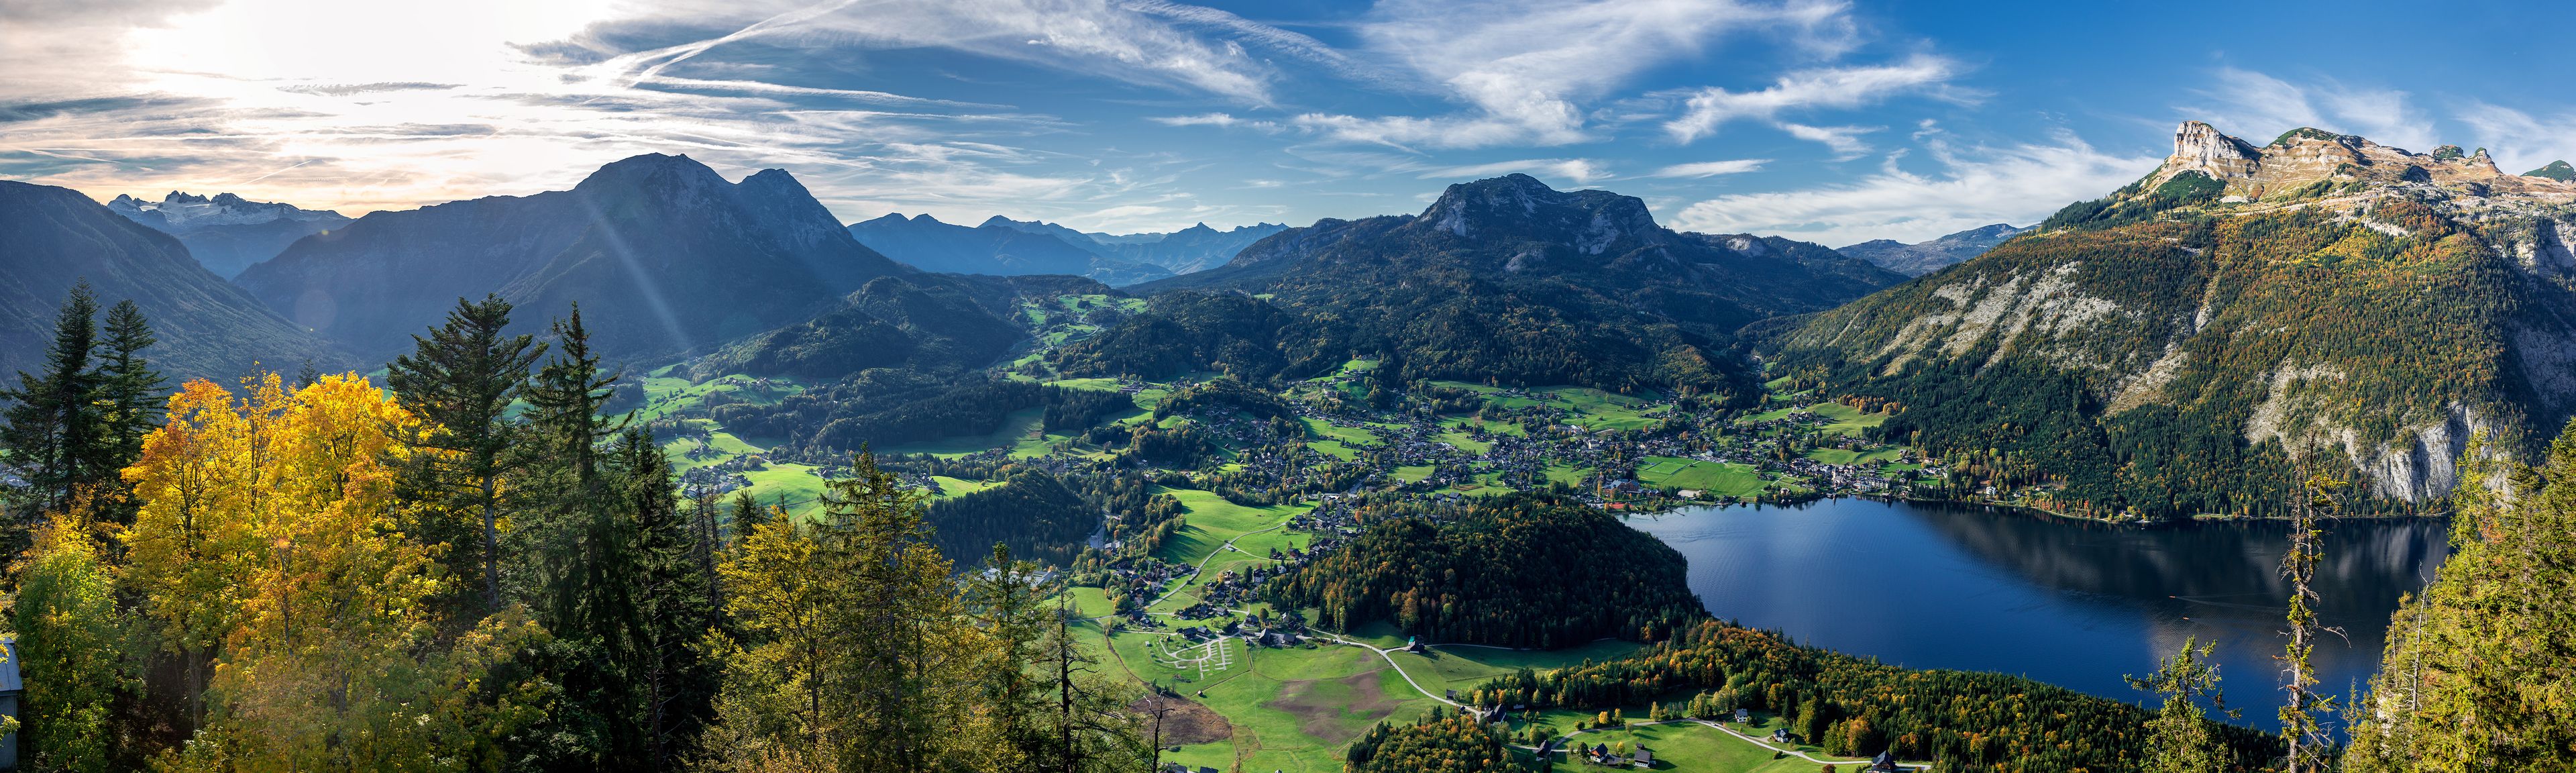 Blick auf die Berge Österreichs und einen schönen Bergsee